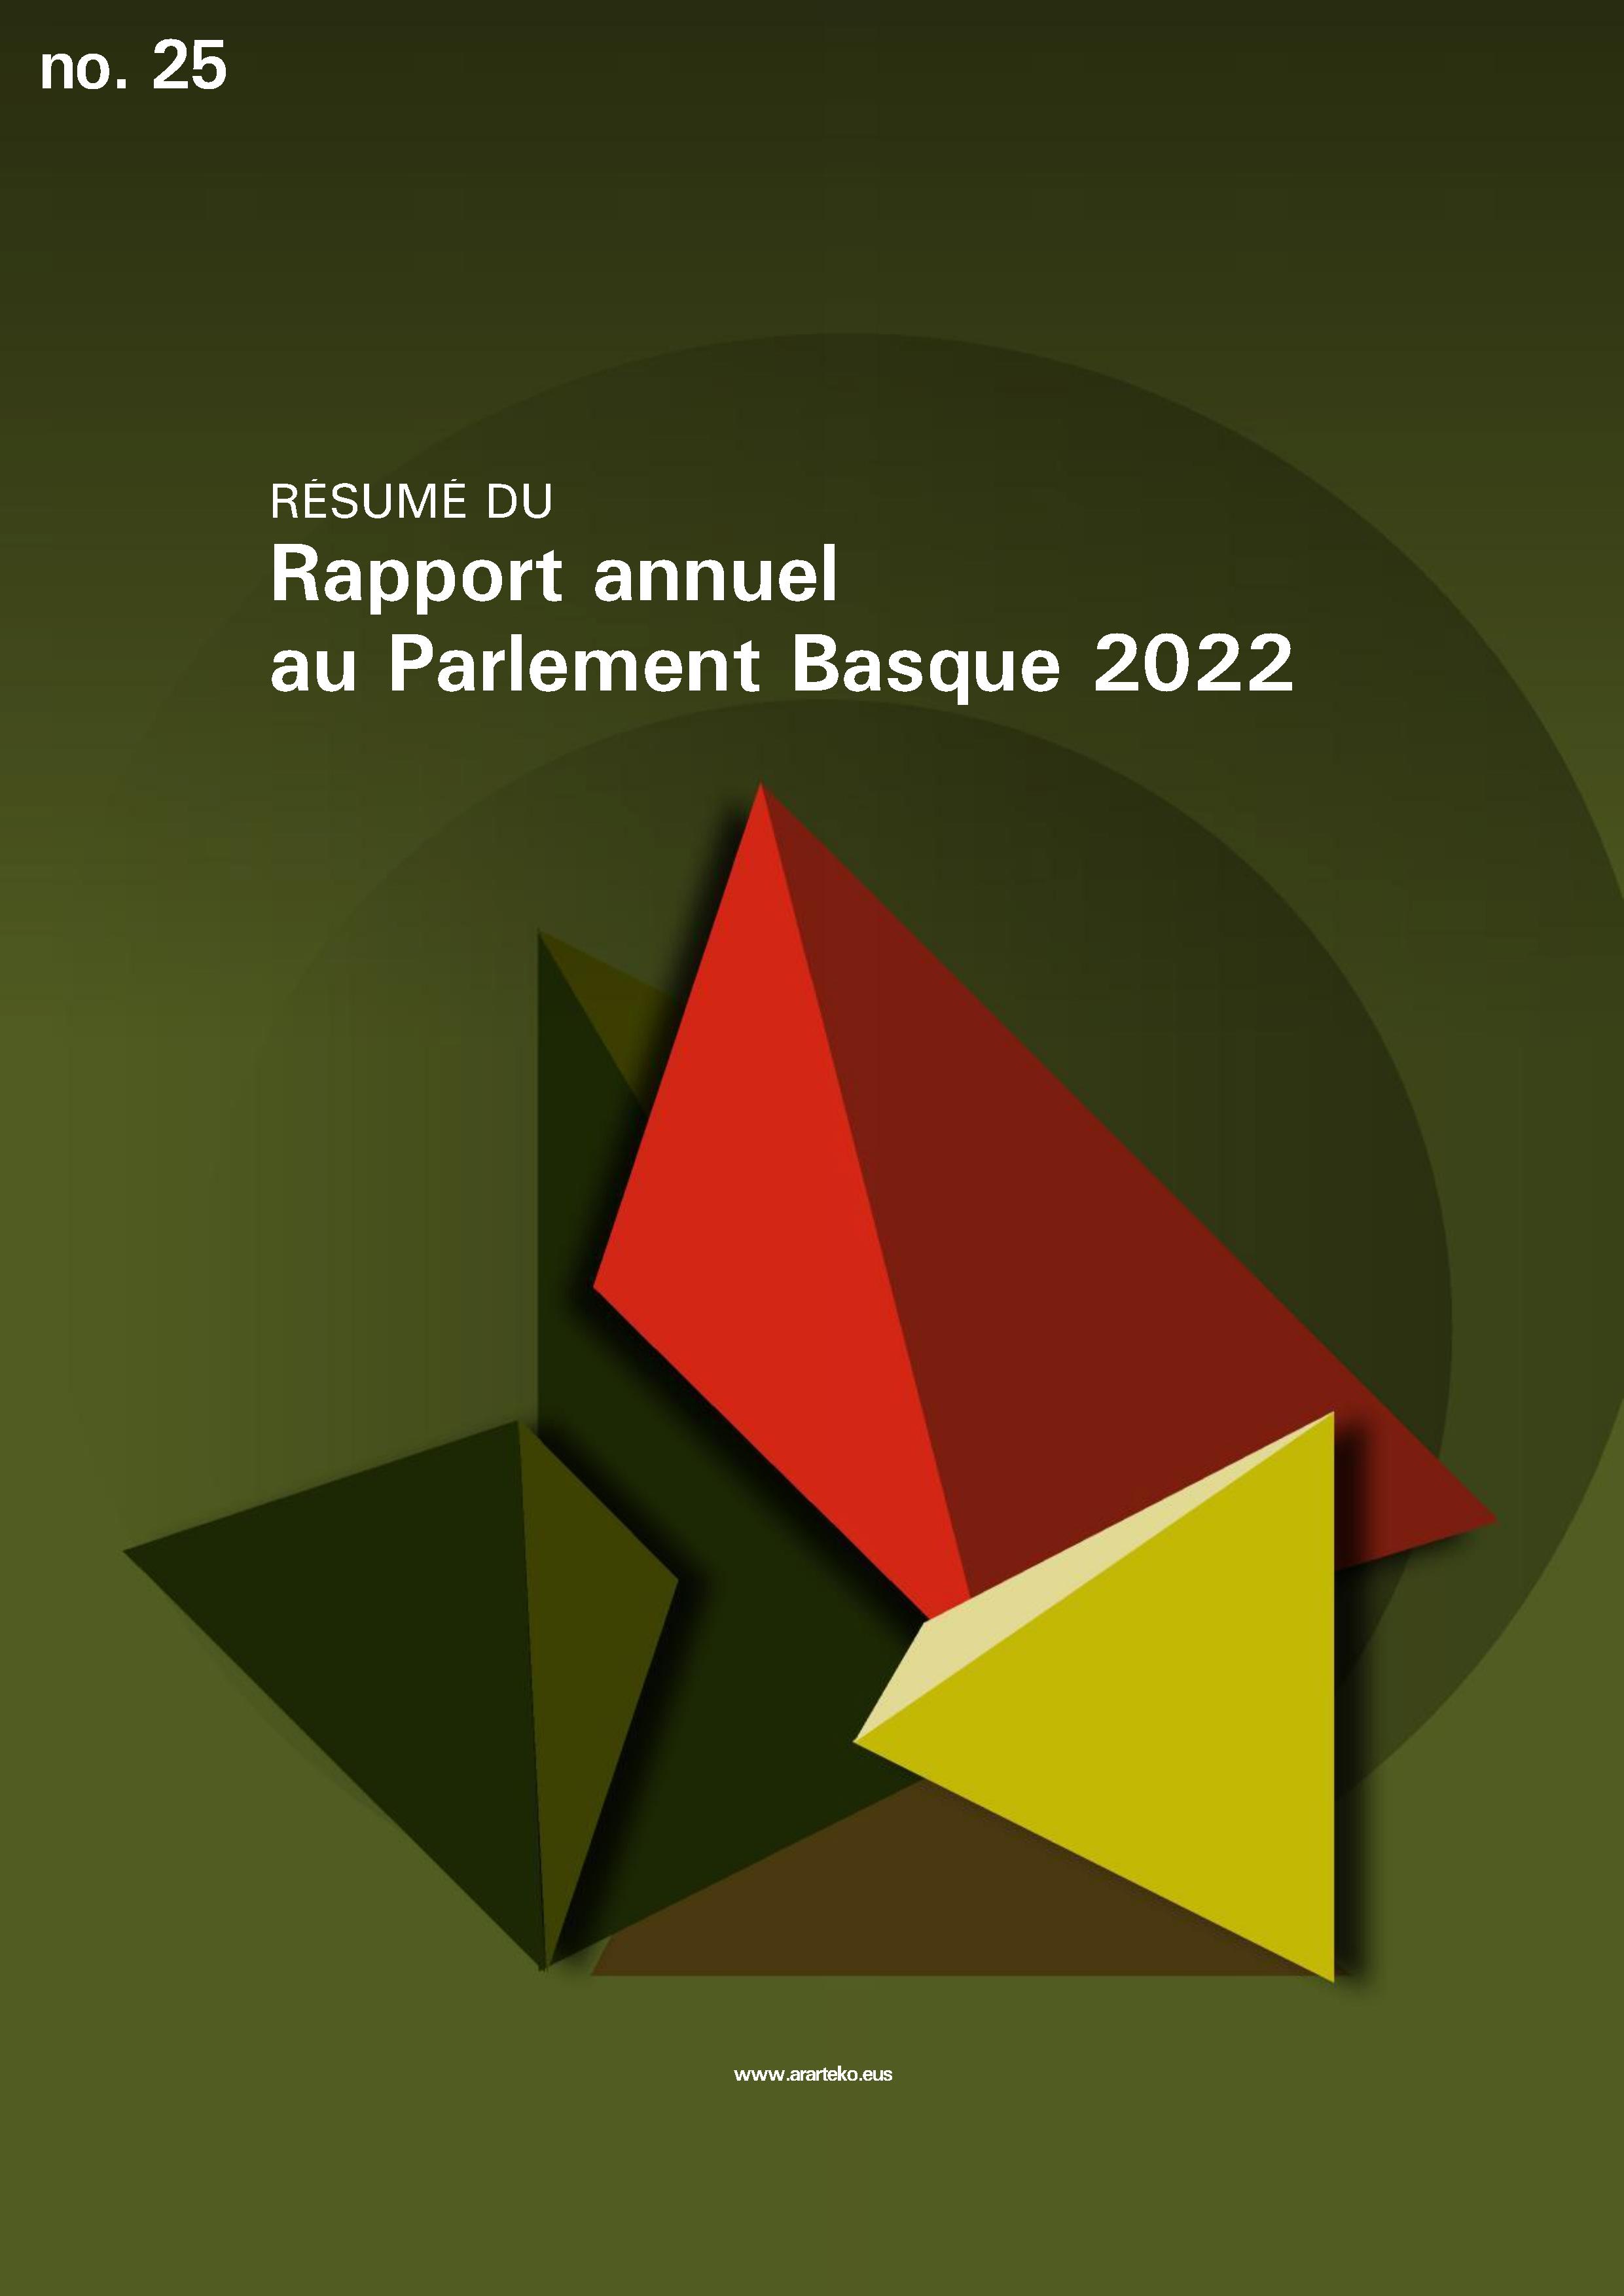 Résumé du Rapport annuel au Parlement Basque 2022